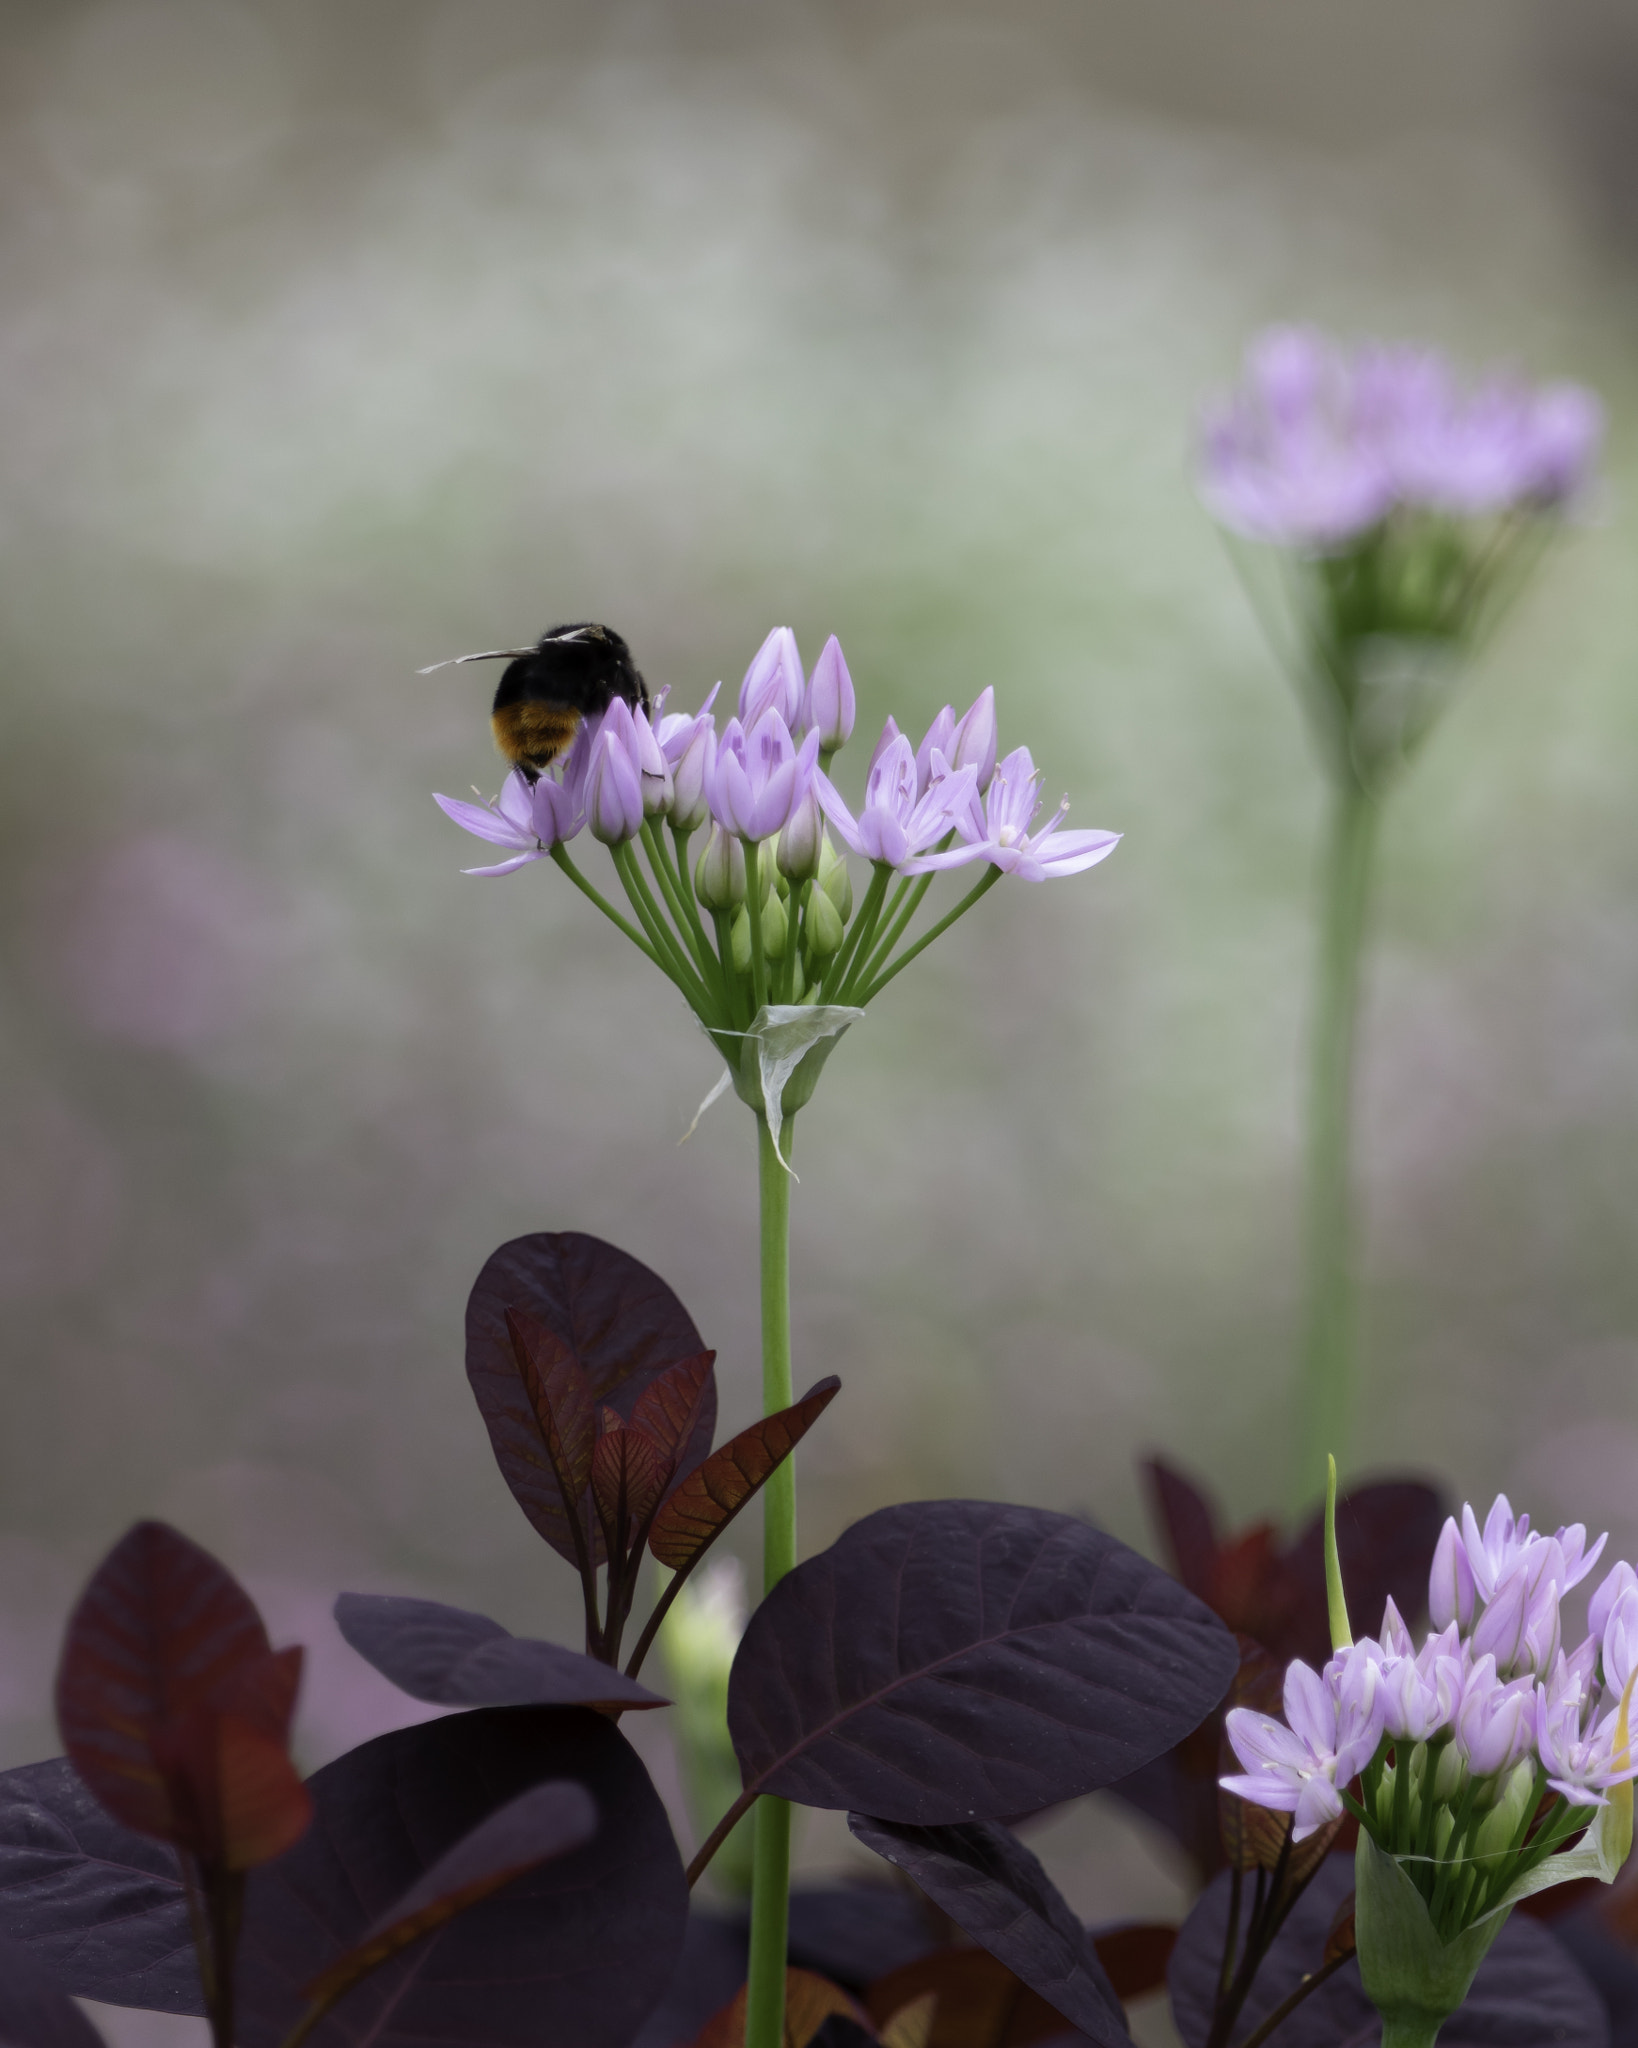 Pentax K-3 II sample photo. Bumblebee photography